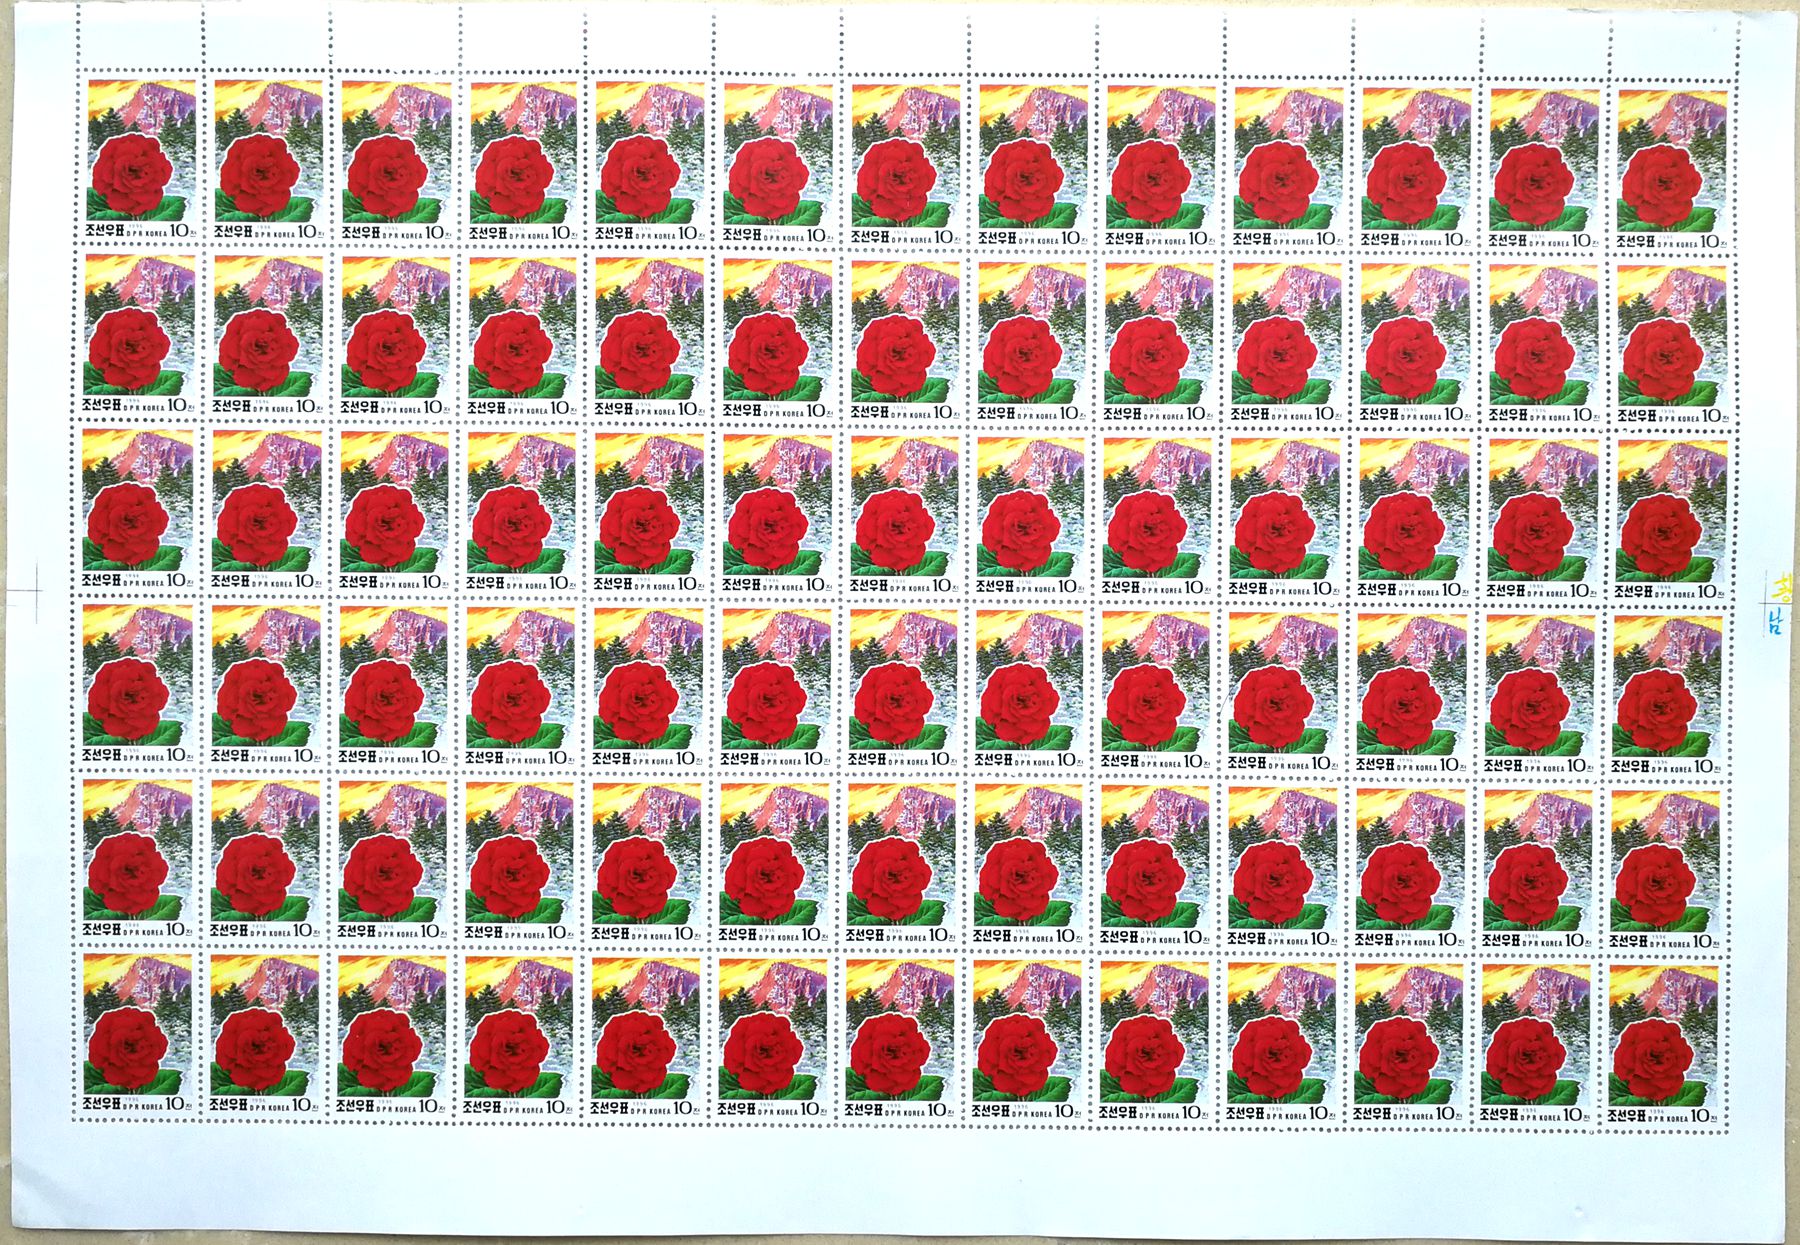 L4466, Korea "Kimjongilia Flower, Birthday of Kim", Full Sheet of 78 Pcs Stamps, 1996